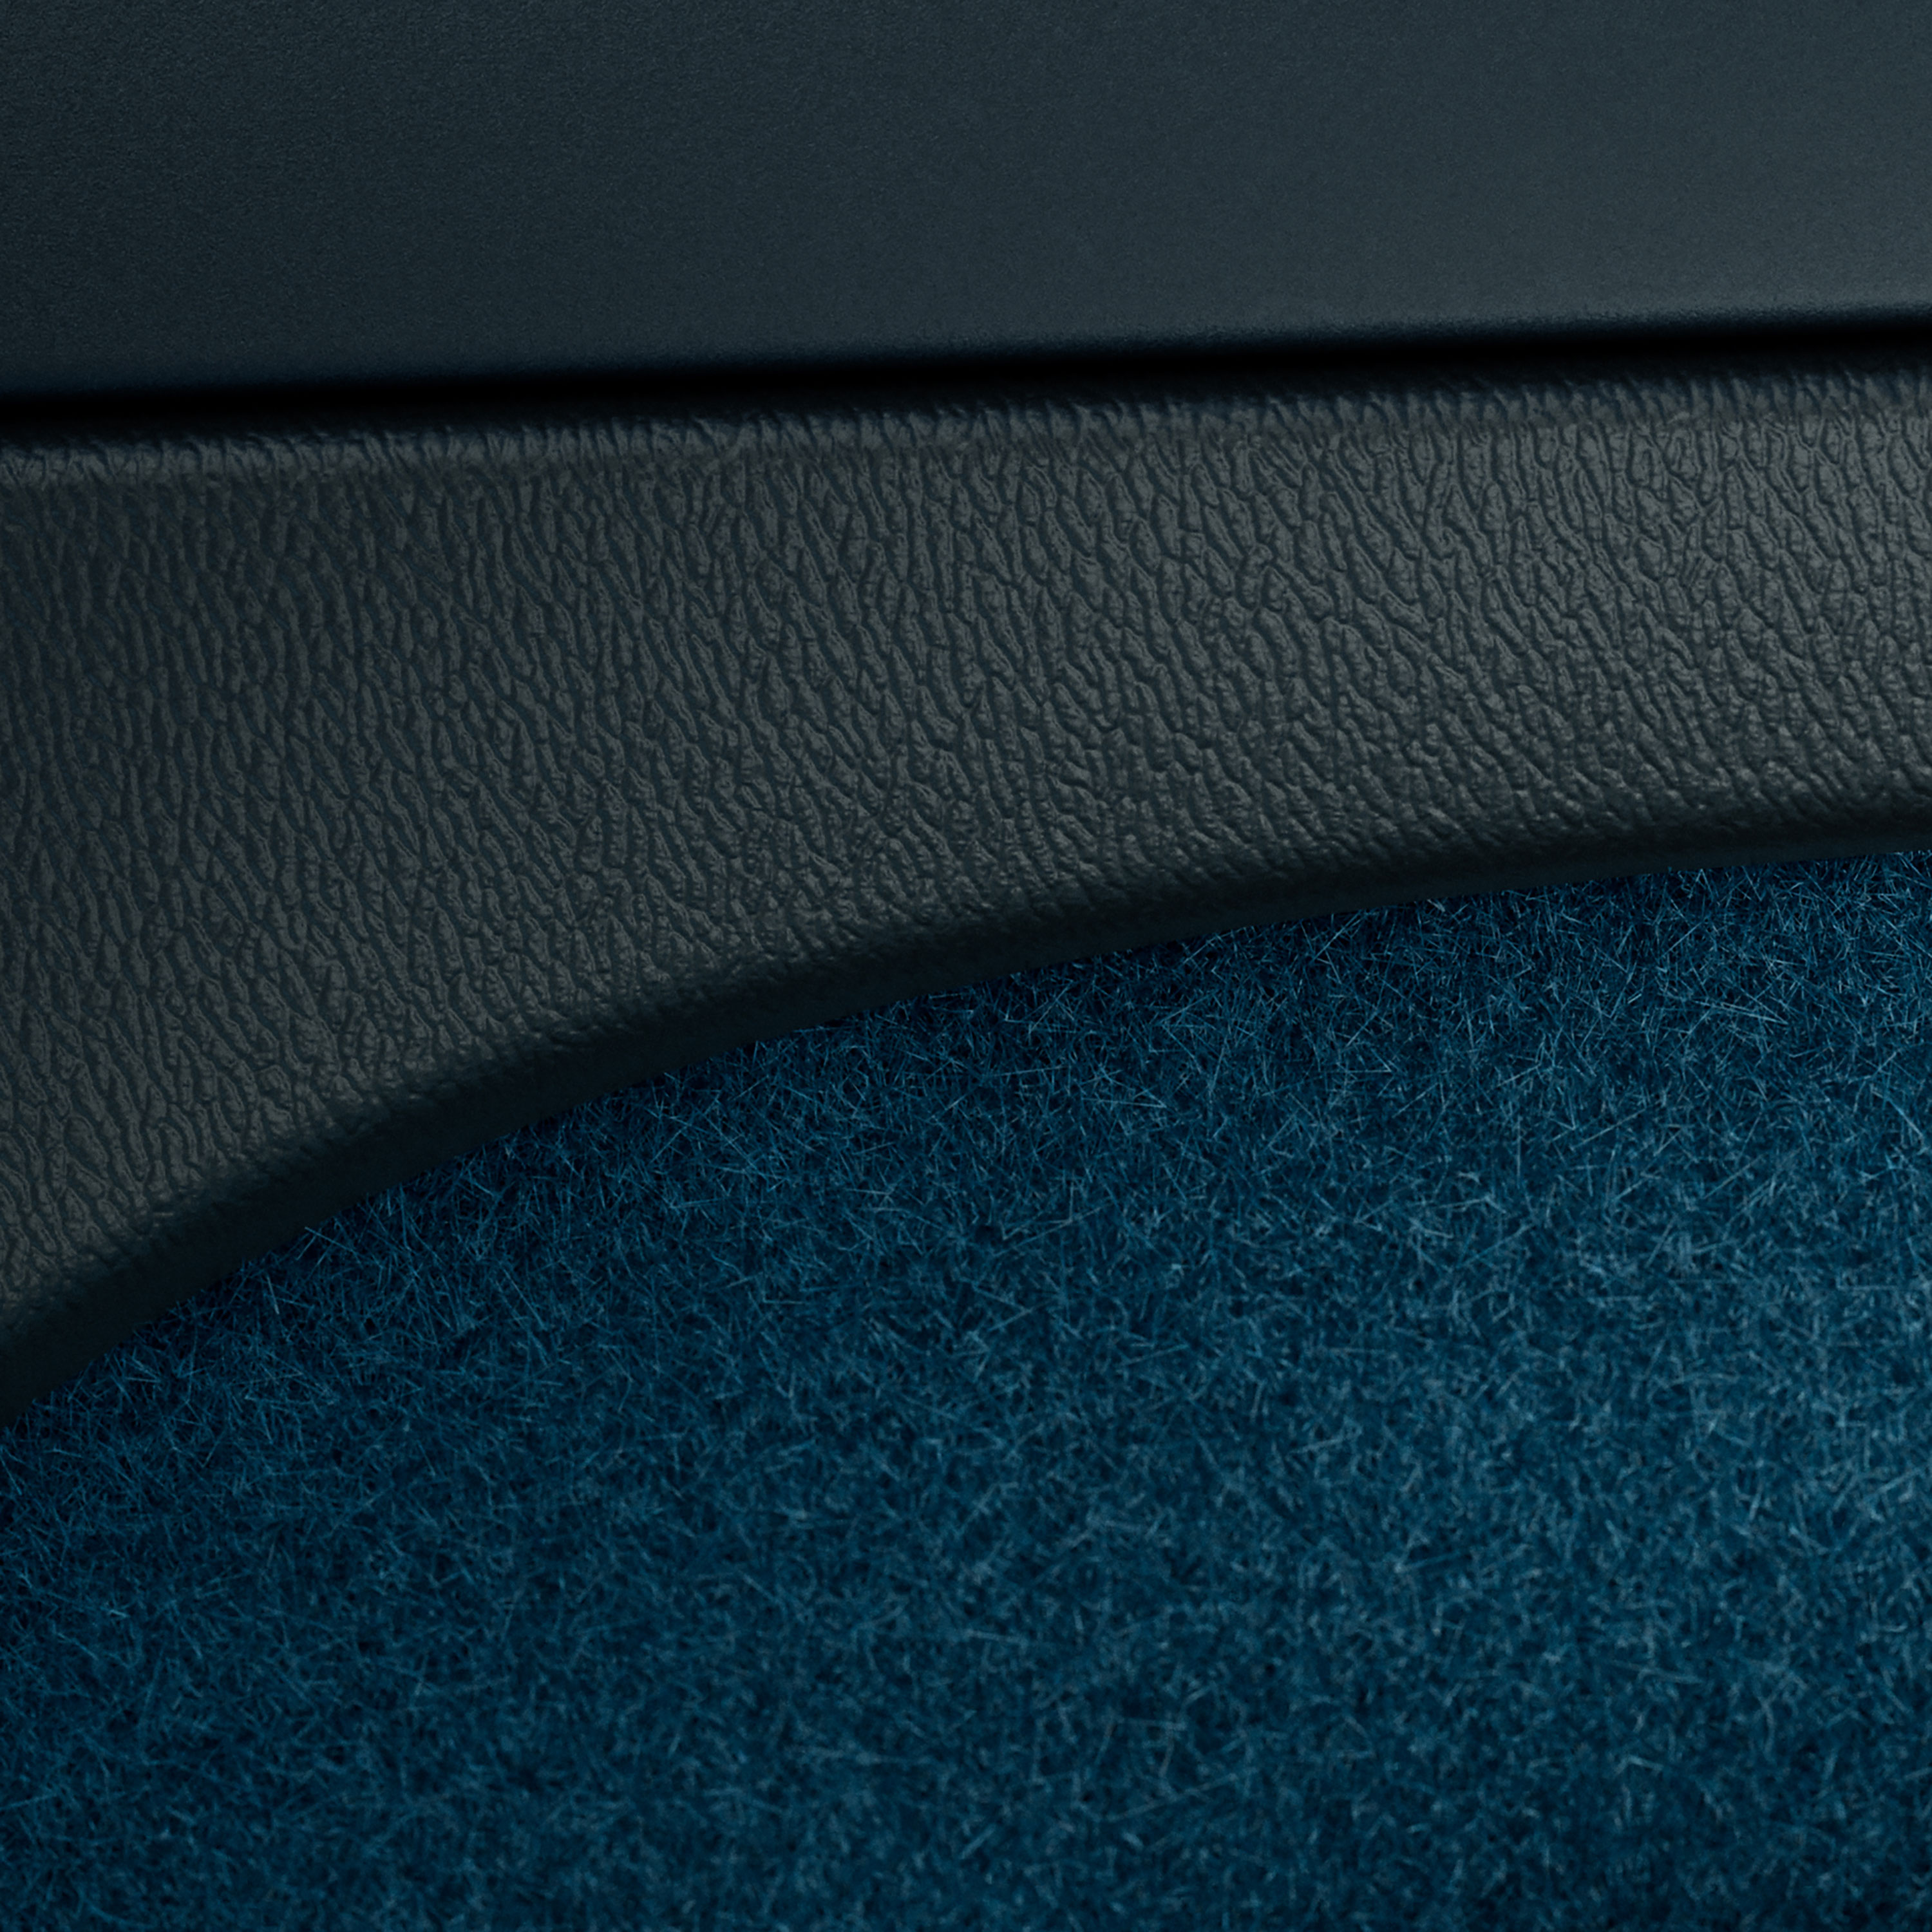 Volvo C40 Recharge'nin dekorlu ve orta ekranlı gösterge paneli.